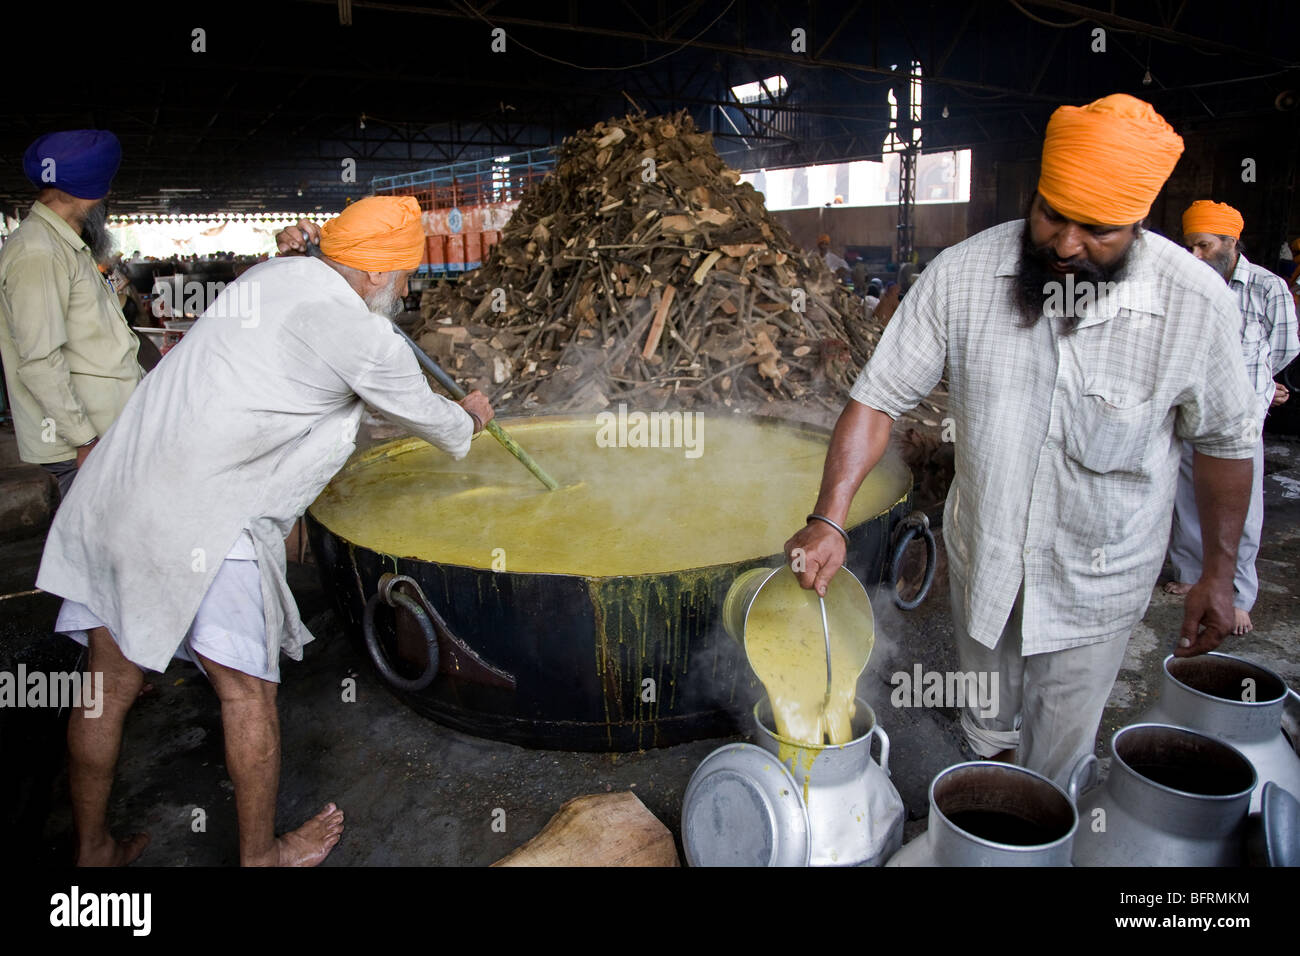 https://c8.alamy.com/comp/BFRMKM/sikh-men-cooking-dhal-curried-lentils-on-a-huge-pot-the-golden-temple-BFRMKM.jpg